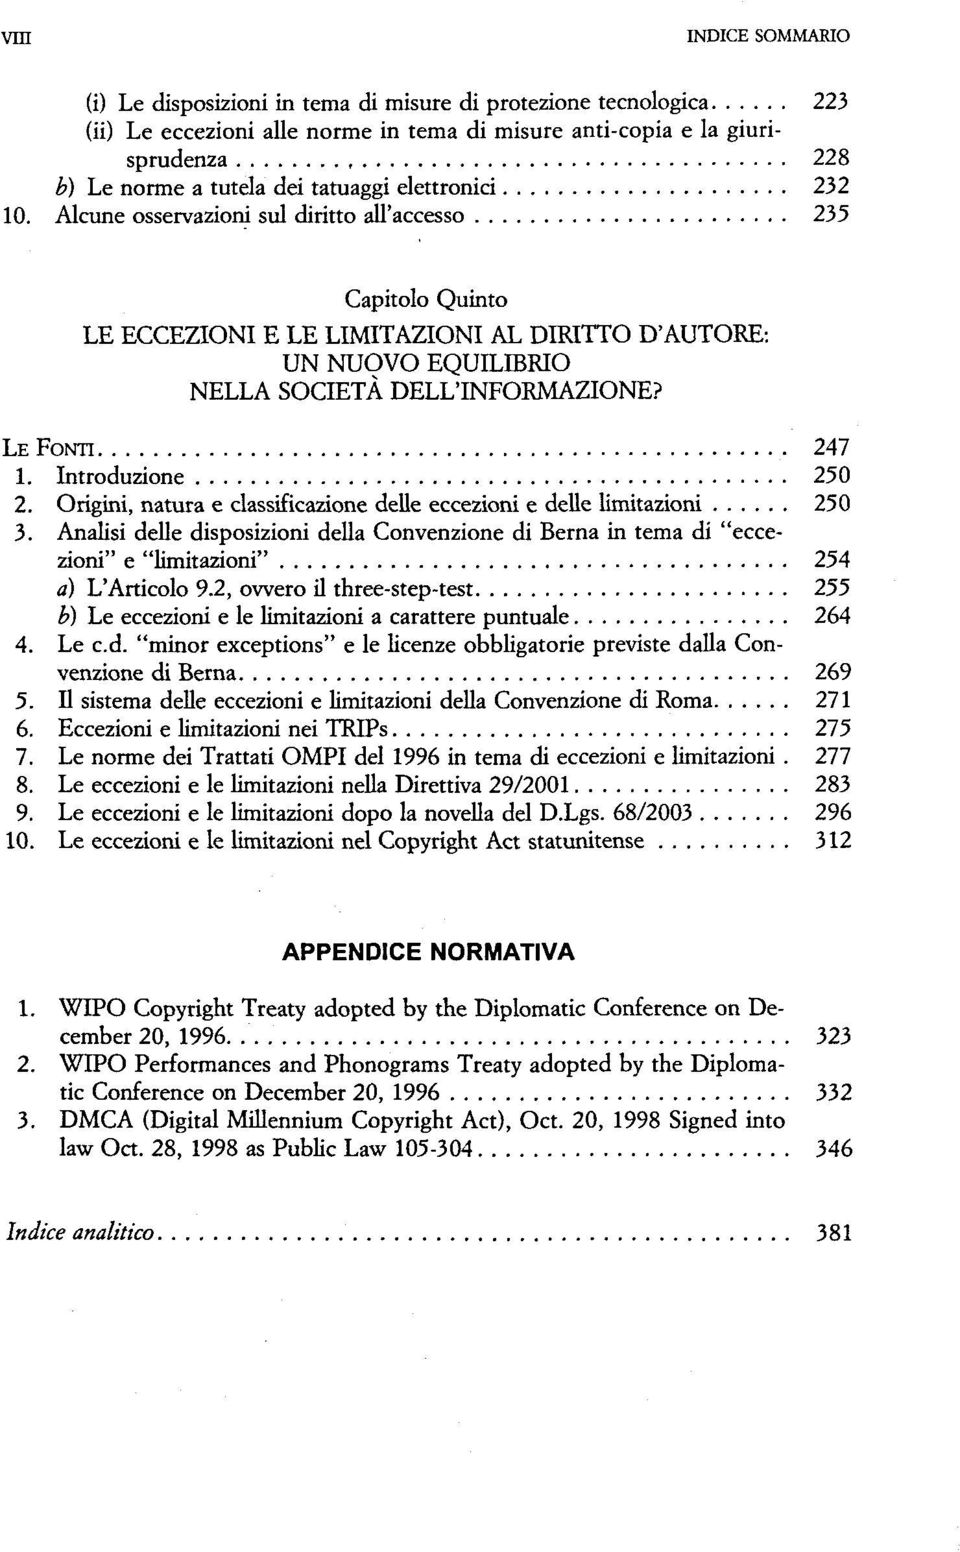 LE FONTI 247 1. Introduzione 250 2. Origini, natura e classificazione delle eccezioni e delle limitazioni 250 3.